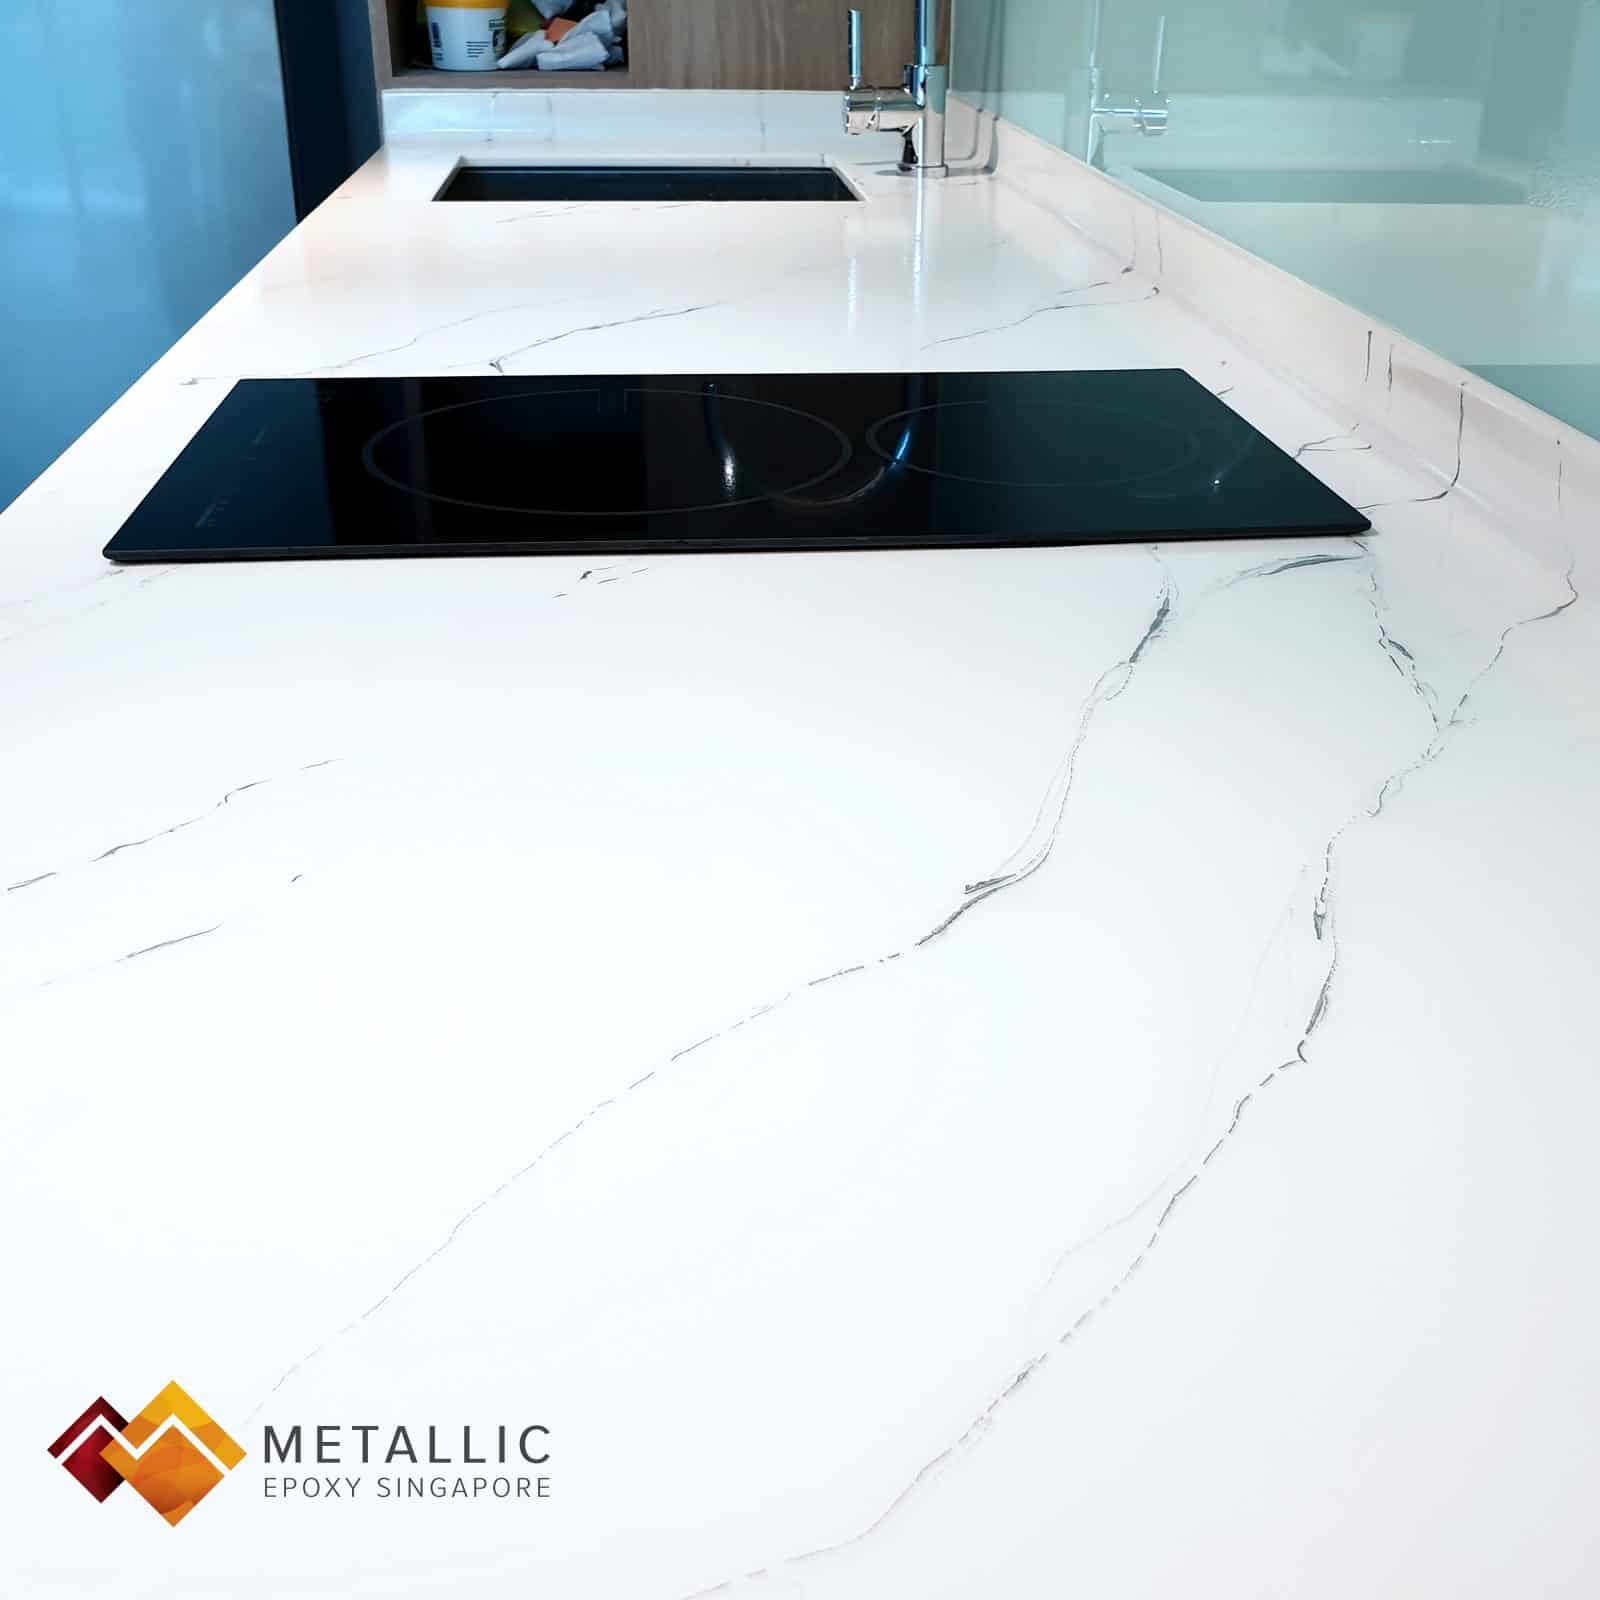 white metallic epoxy singapore countertop